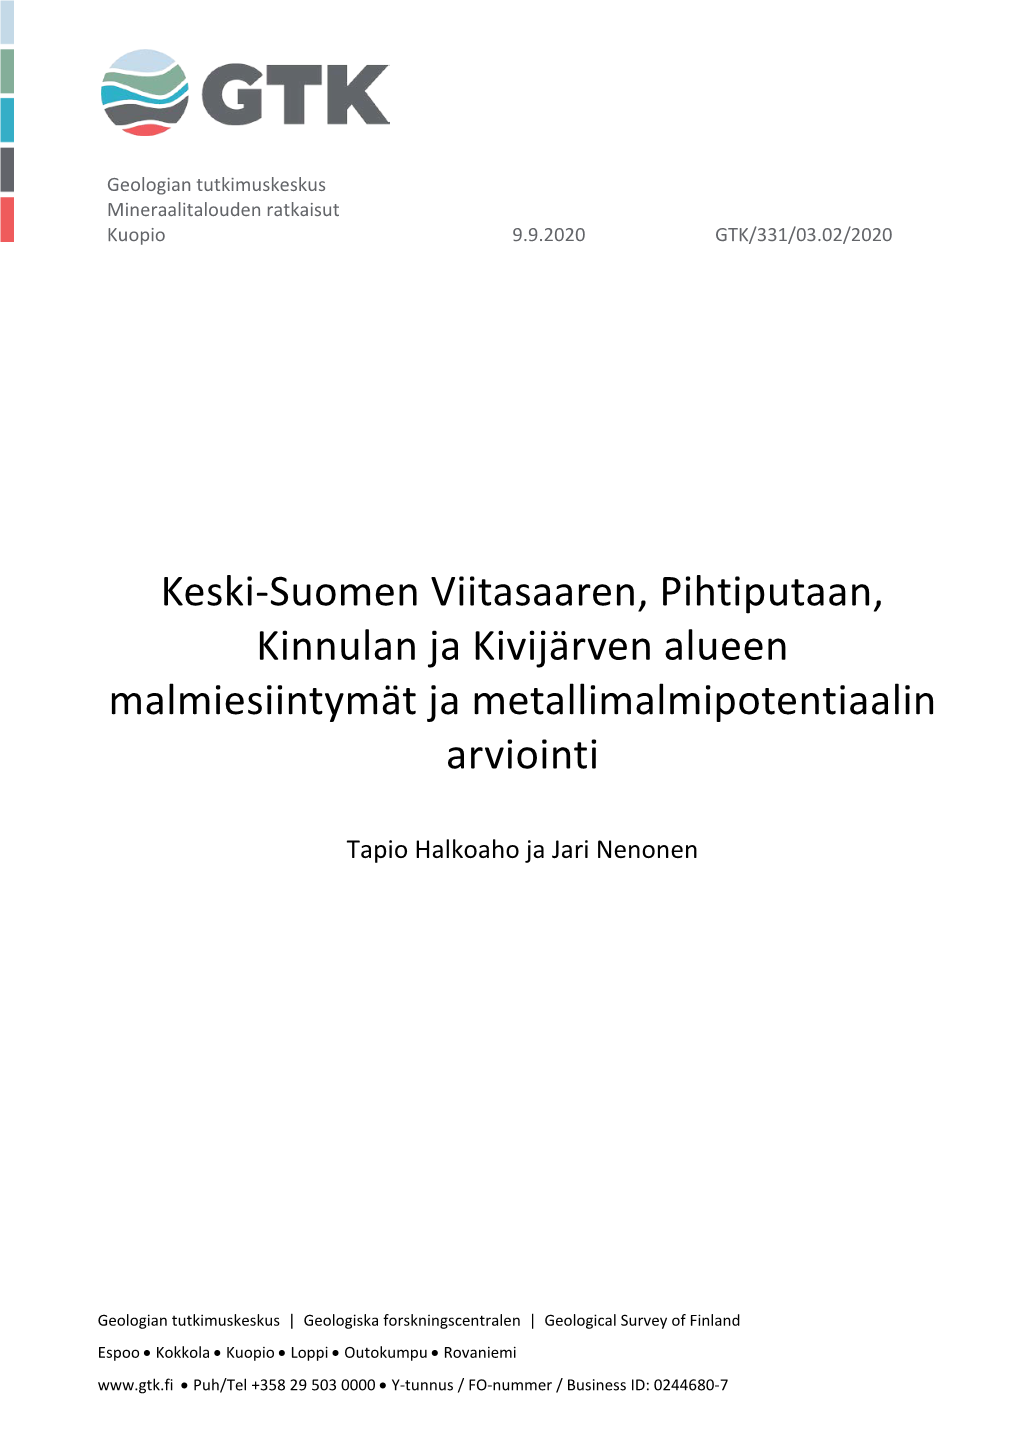 Keski-Suomen Viitasaaren, Pihtiputaan, Kinnulan Ja Kivijärven Alueen Malmiesiintymät Ja Metallimalmipotentiaalin Arviointi